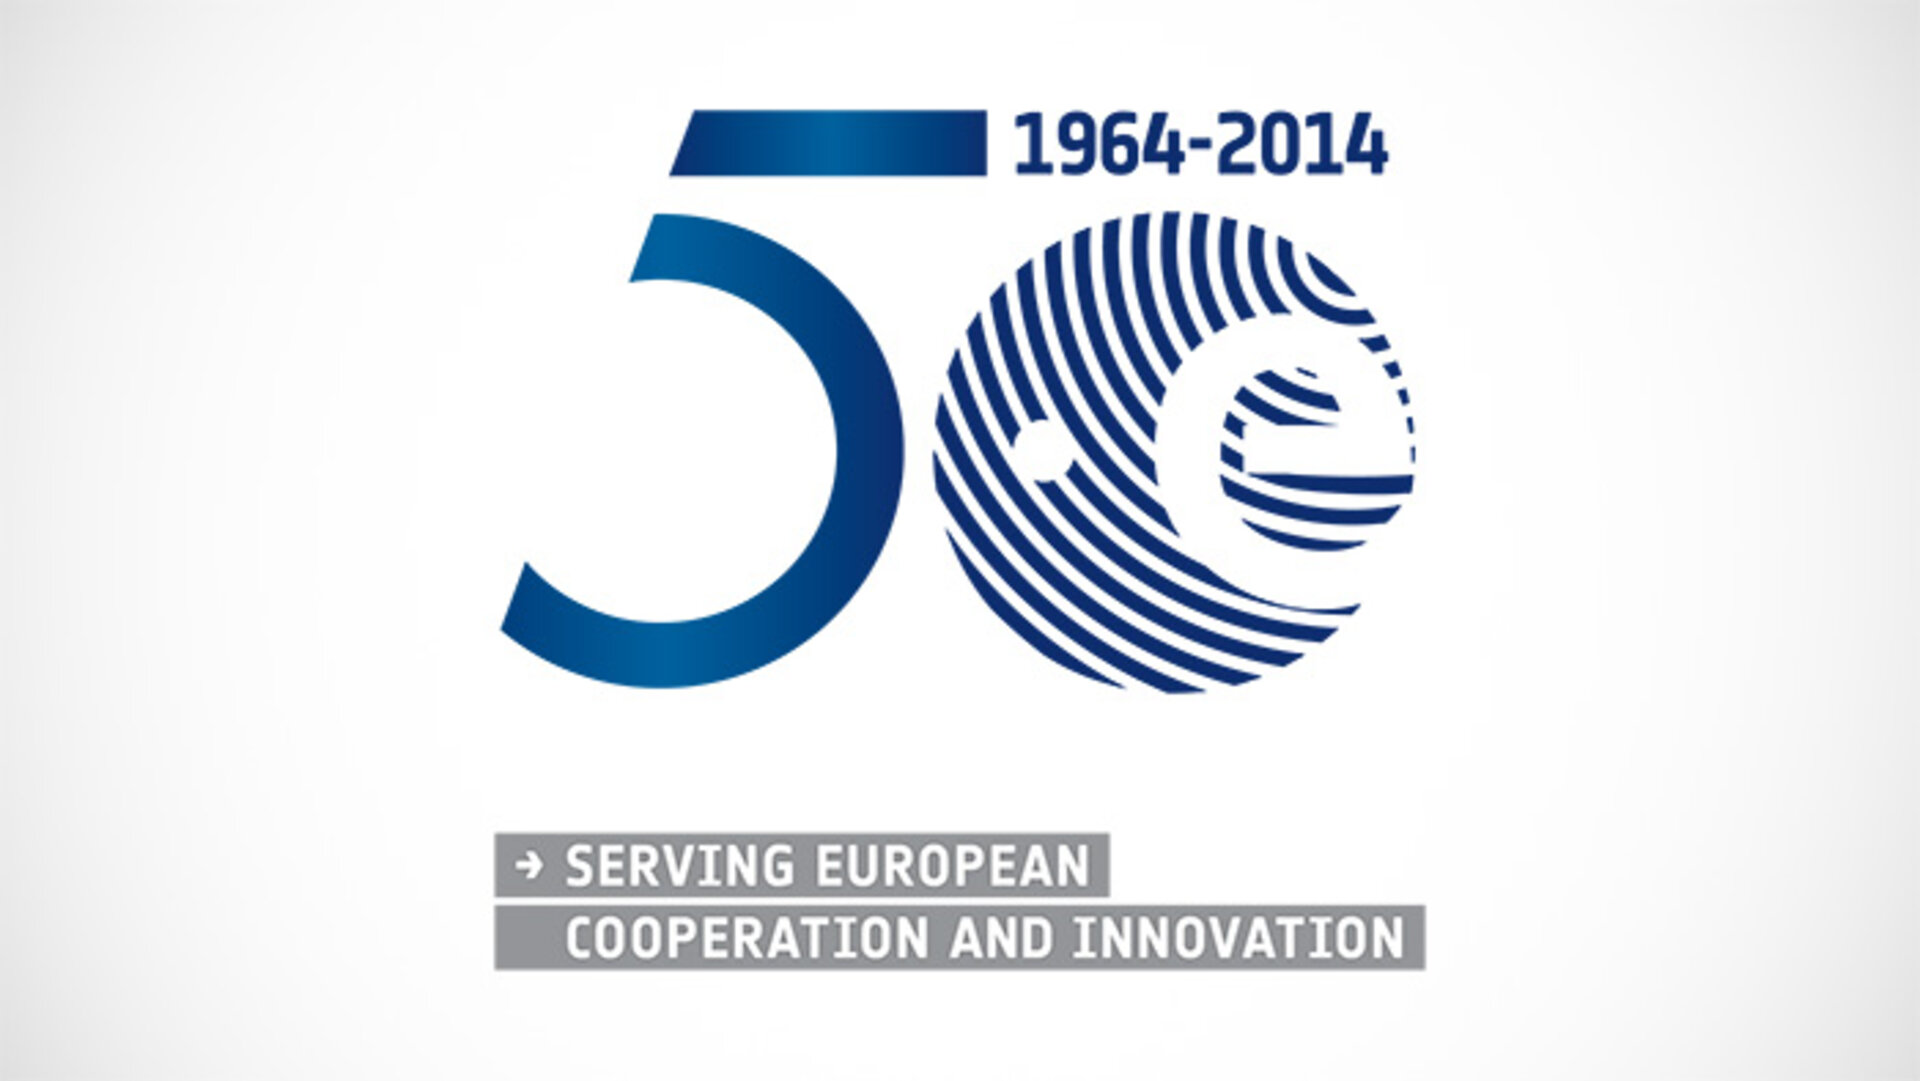 Il logo per i 50 anni dell'ESA